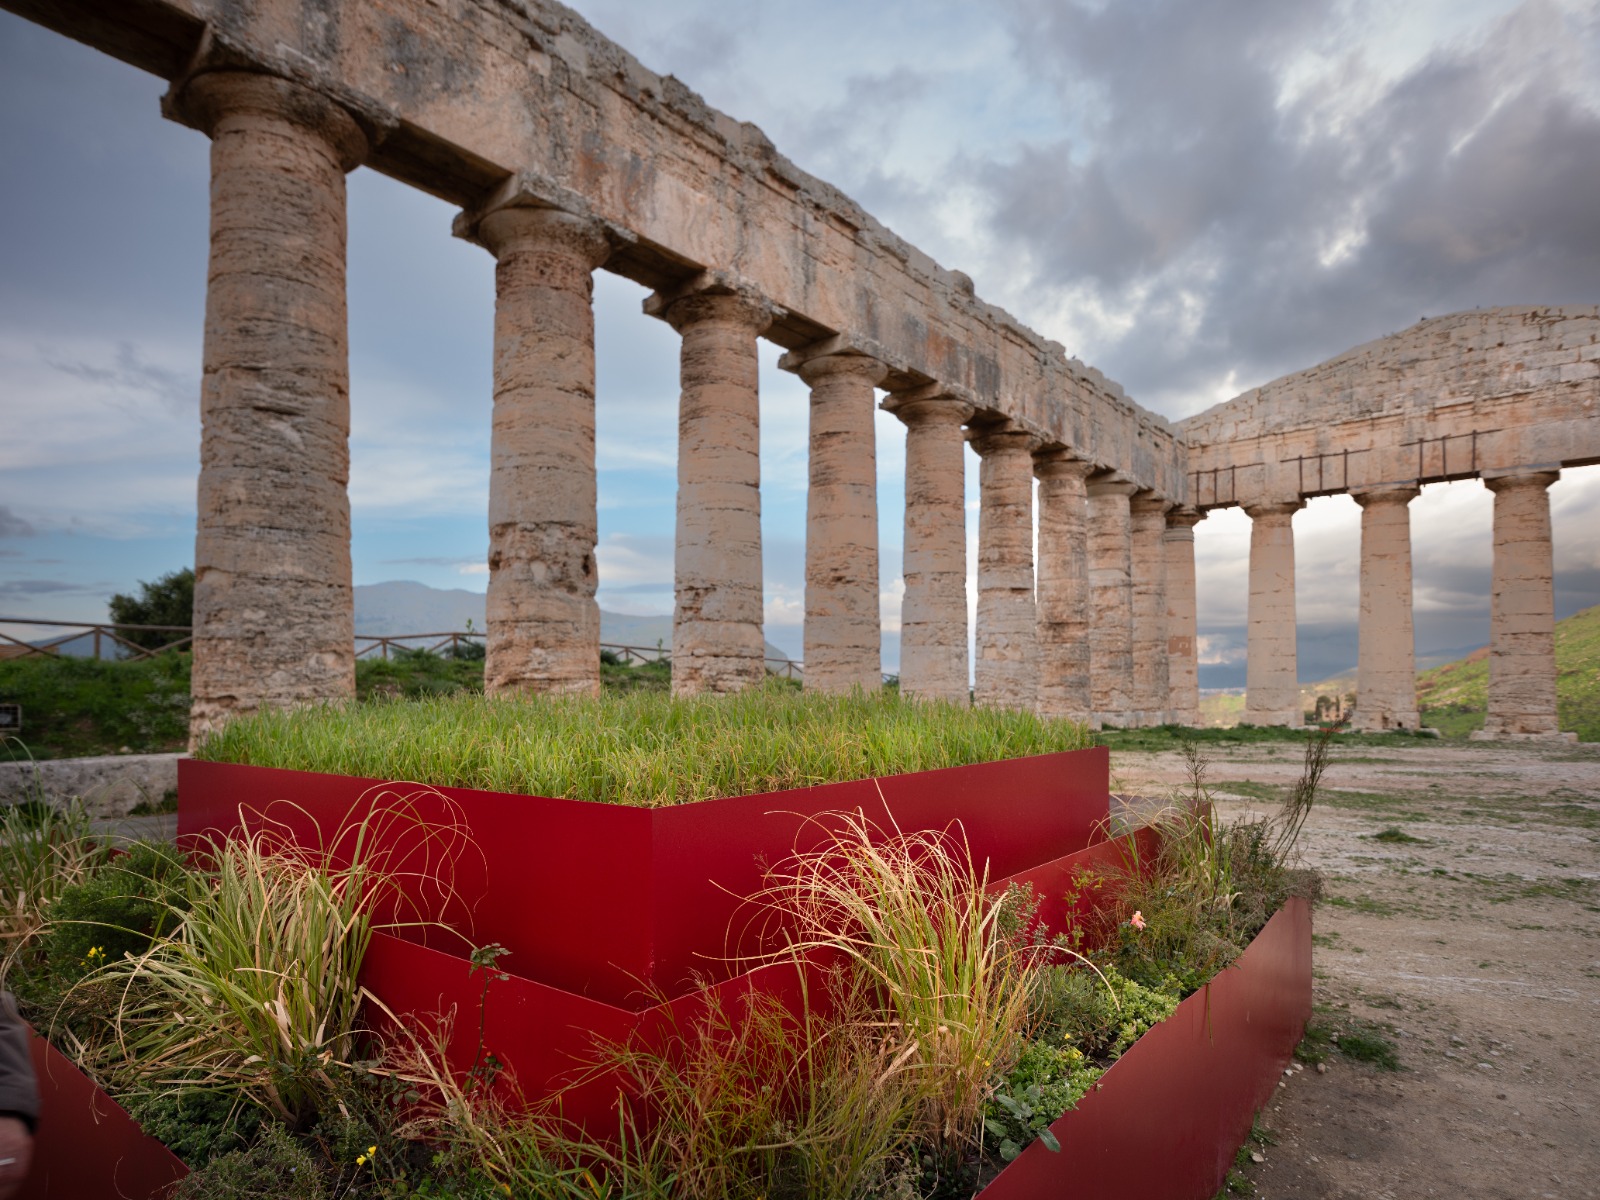 Giornata dei beni culturali siciliani. Il 10 marzo, ingresso gratuito nei parchi, musei e siti archeologici della Regione Sicilia